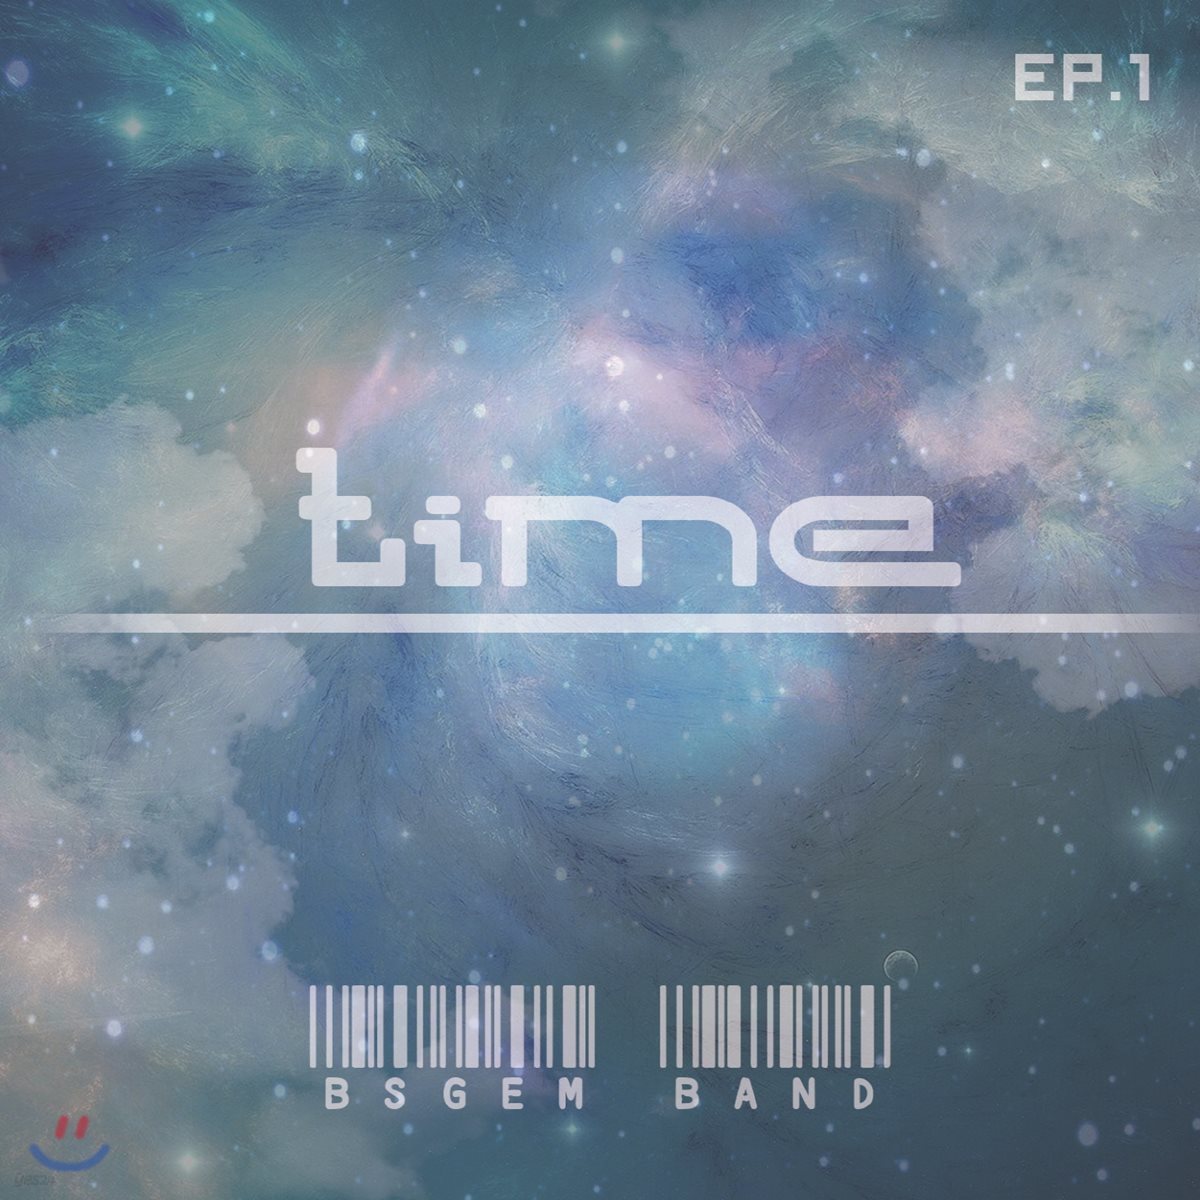 비에스잼 (BSgem Band) - Time